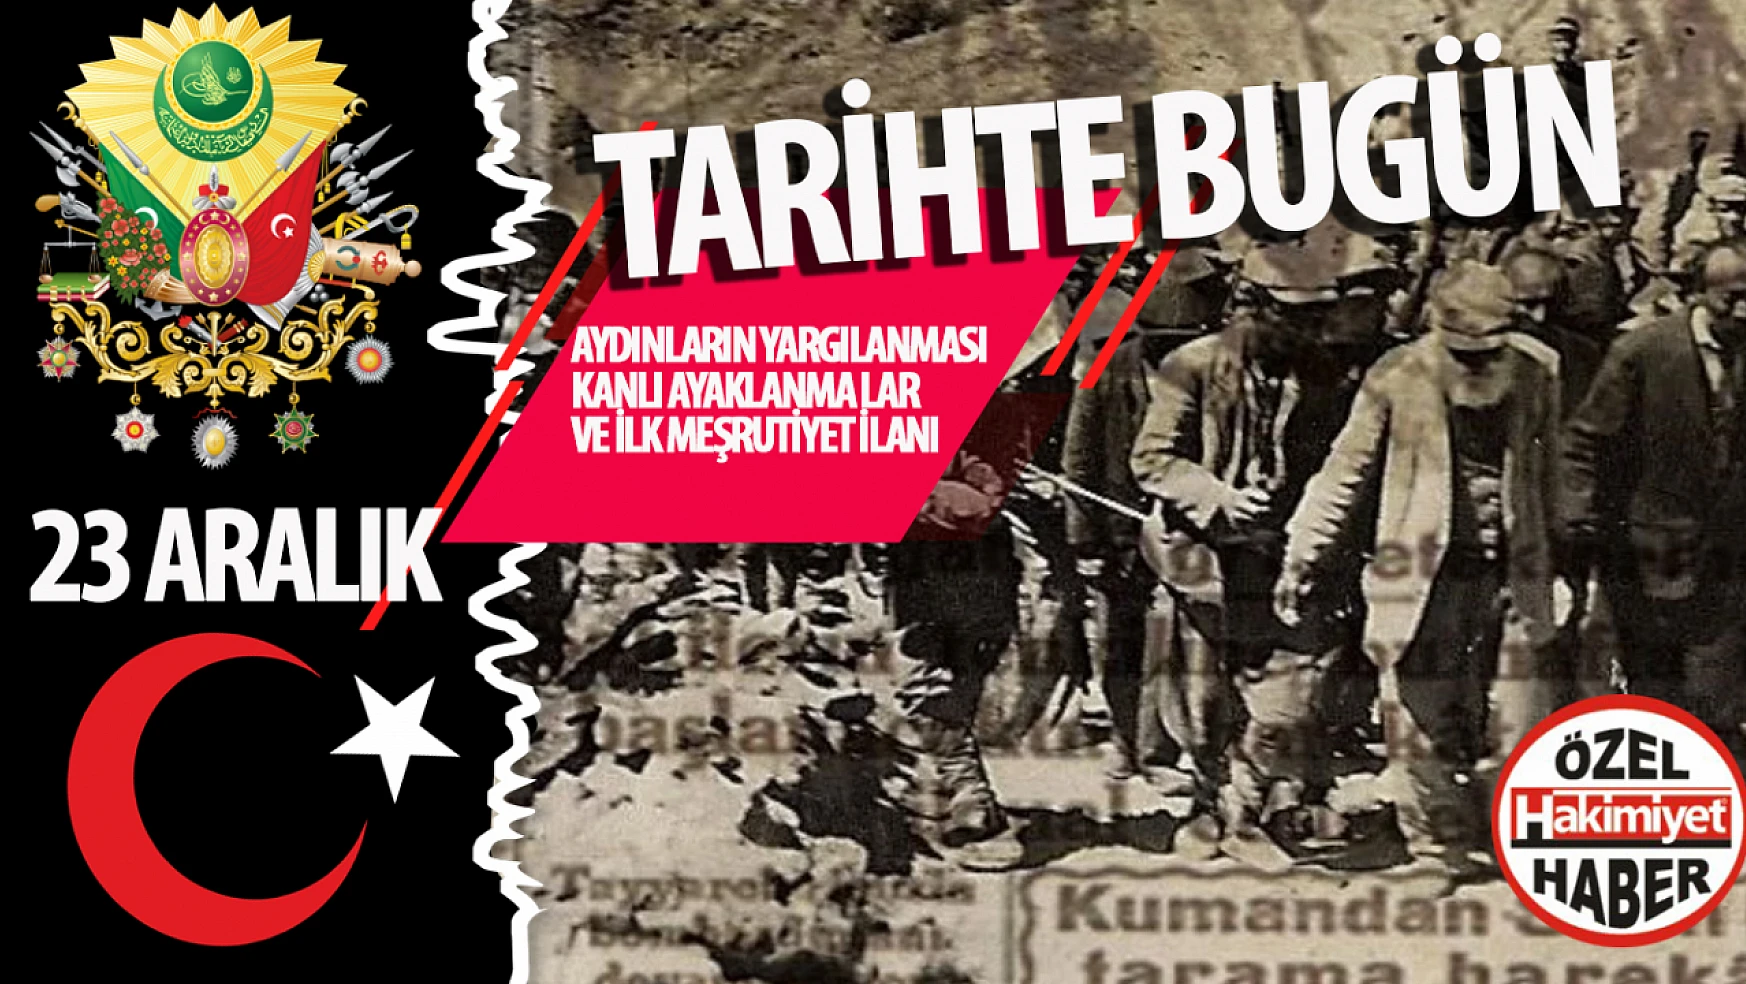 Türkiye'nin Tarihine Damga Vuran 23 Aralık: Aydınların Yargılanması, Kanlı Ayaklanmalar ve İlk Meşrutiyet İlanı